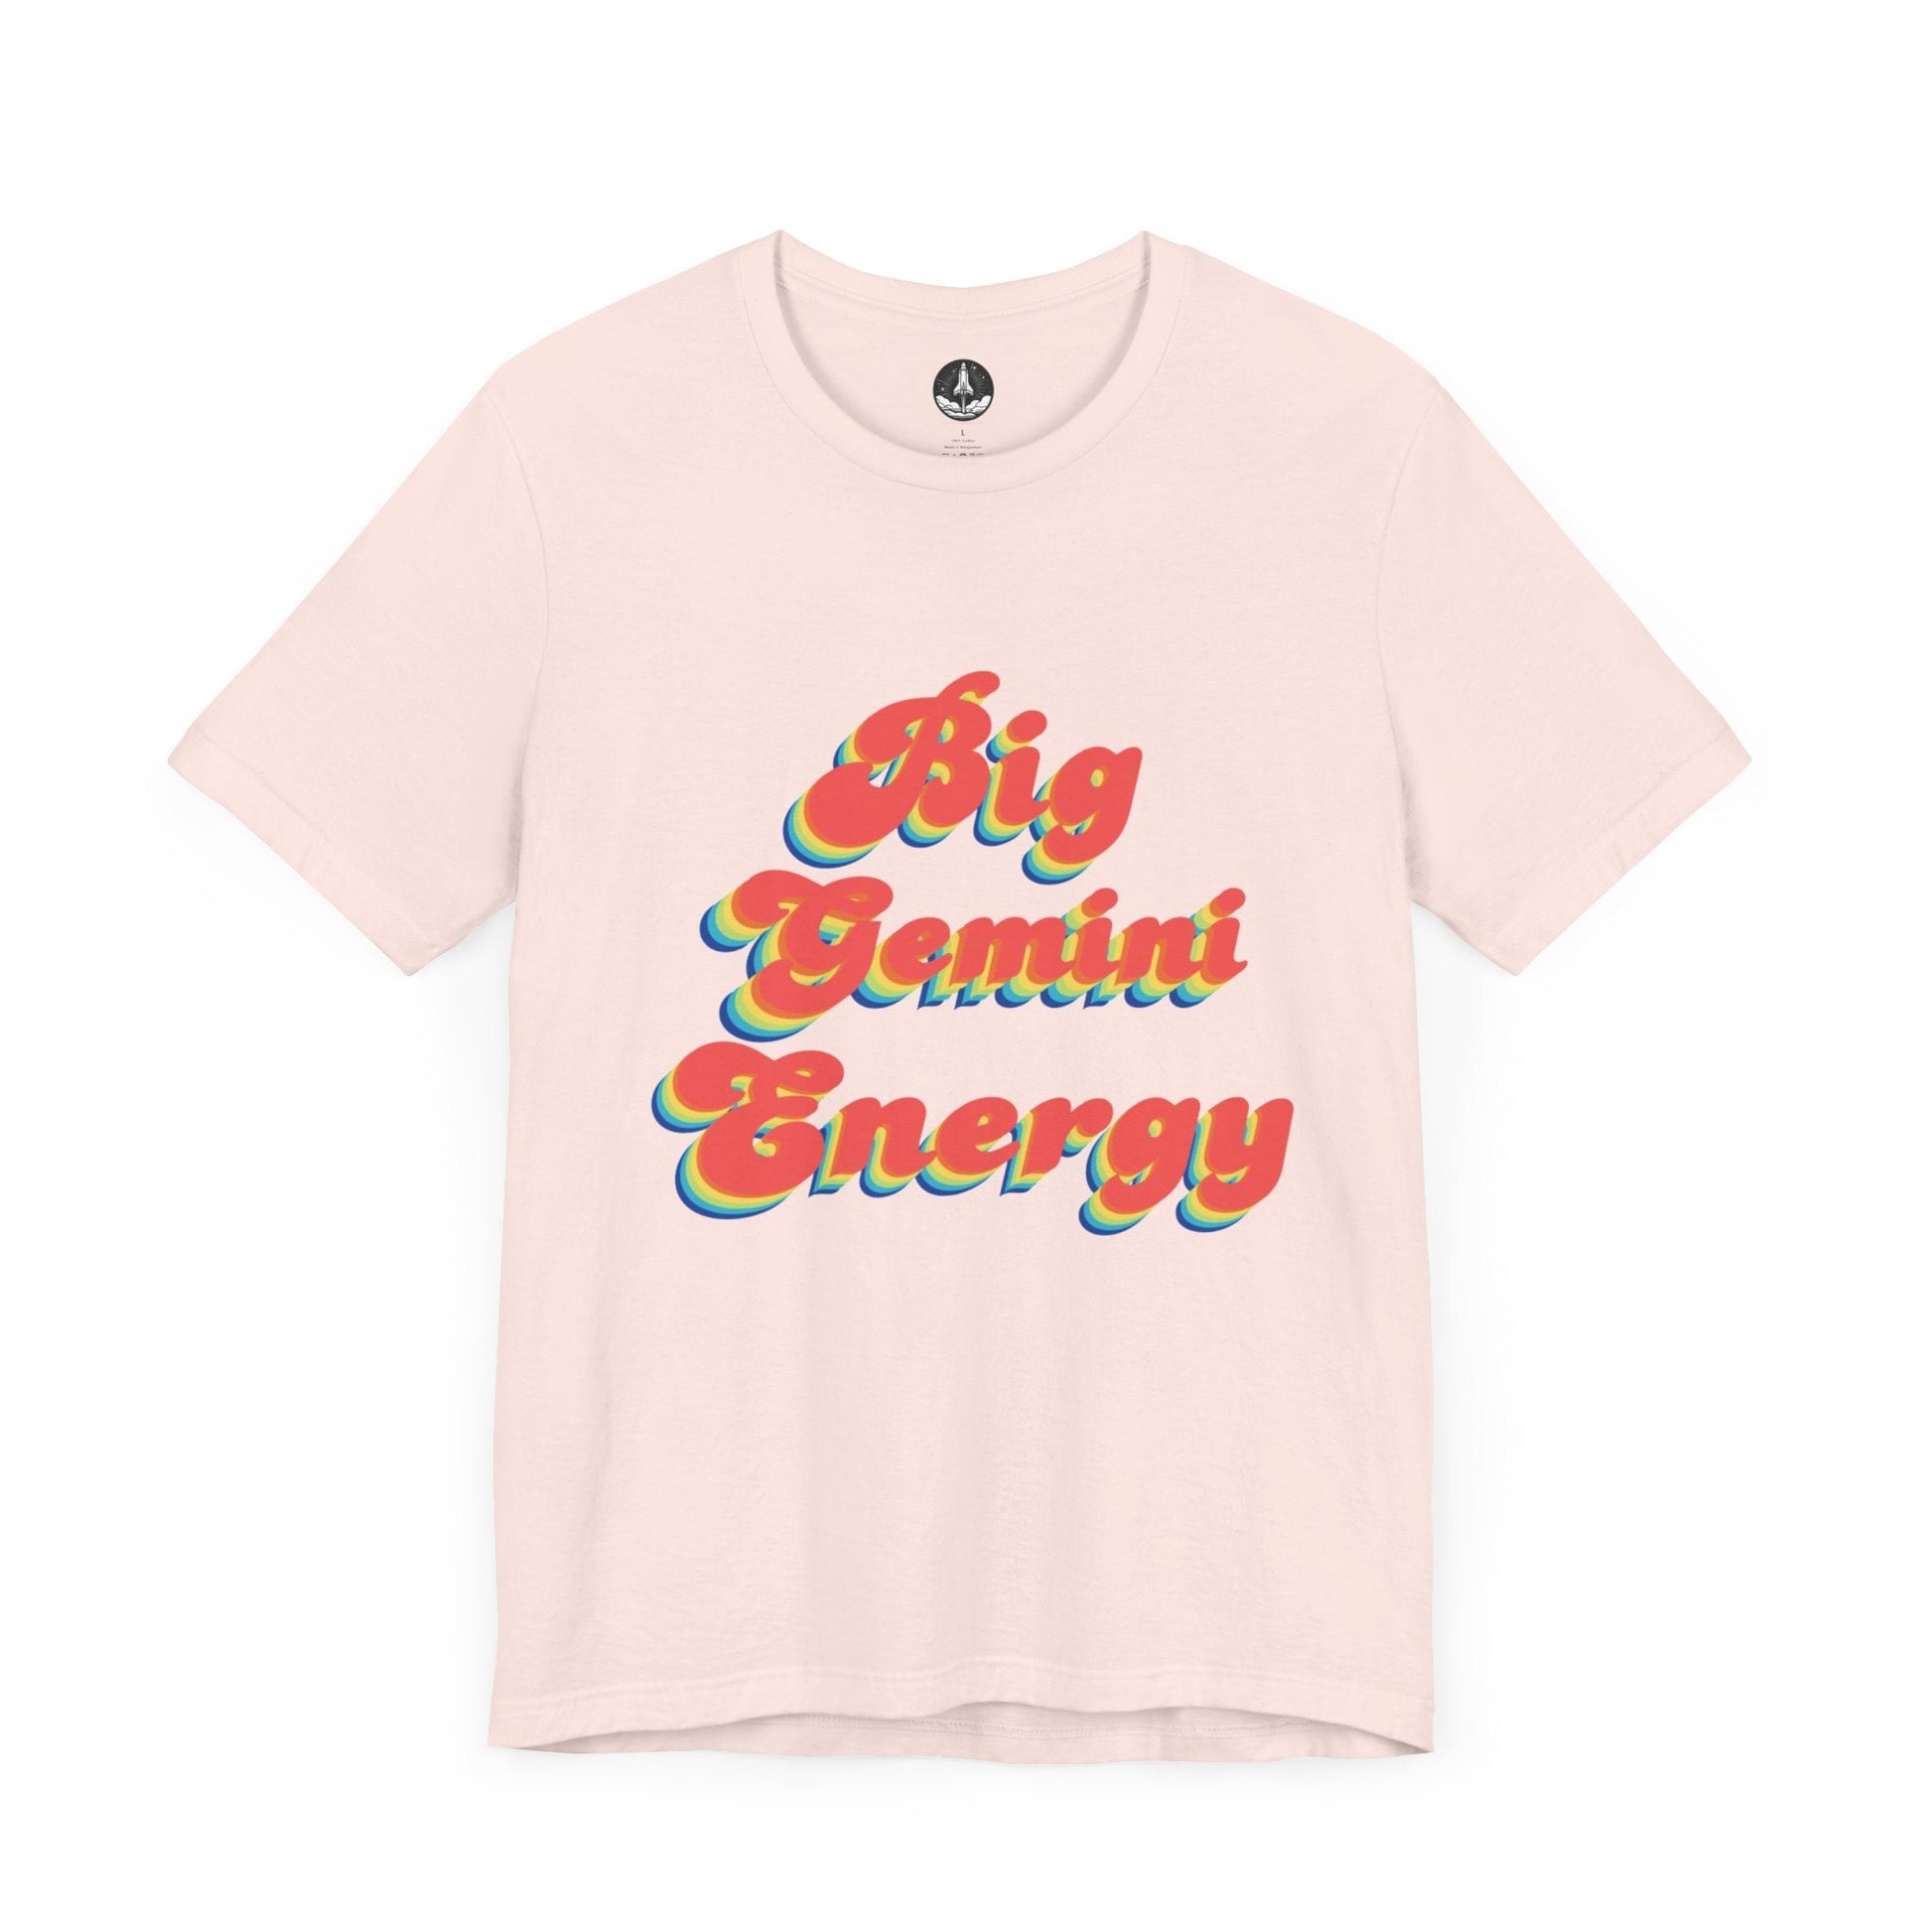 T-Shirt Soft Pink / S Big Gemini Energy TShirt